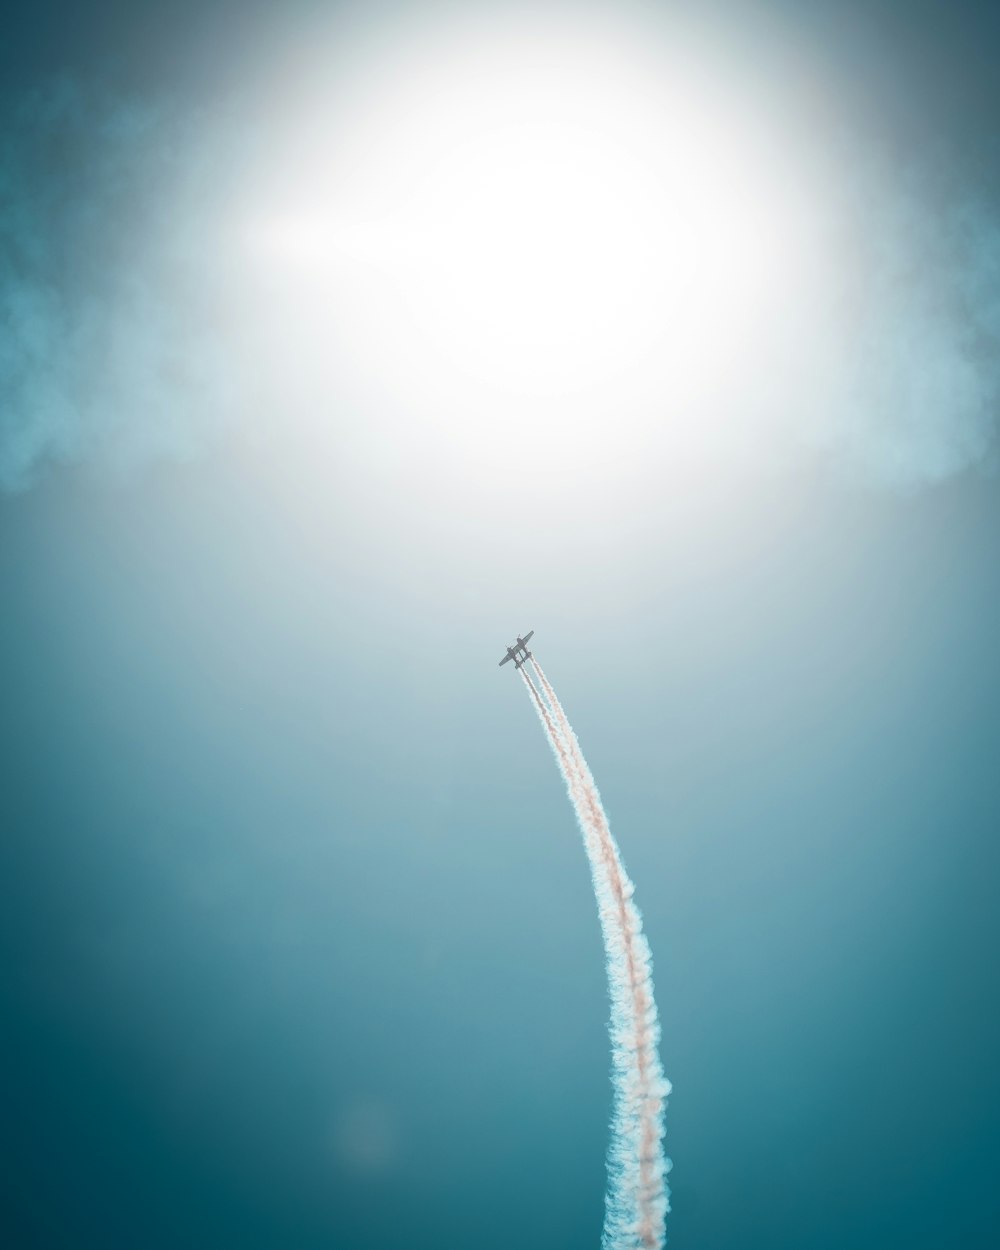 Un jet volando por el cielo dejando un rastro de humo